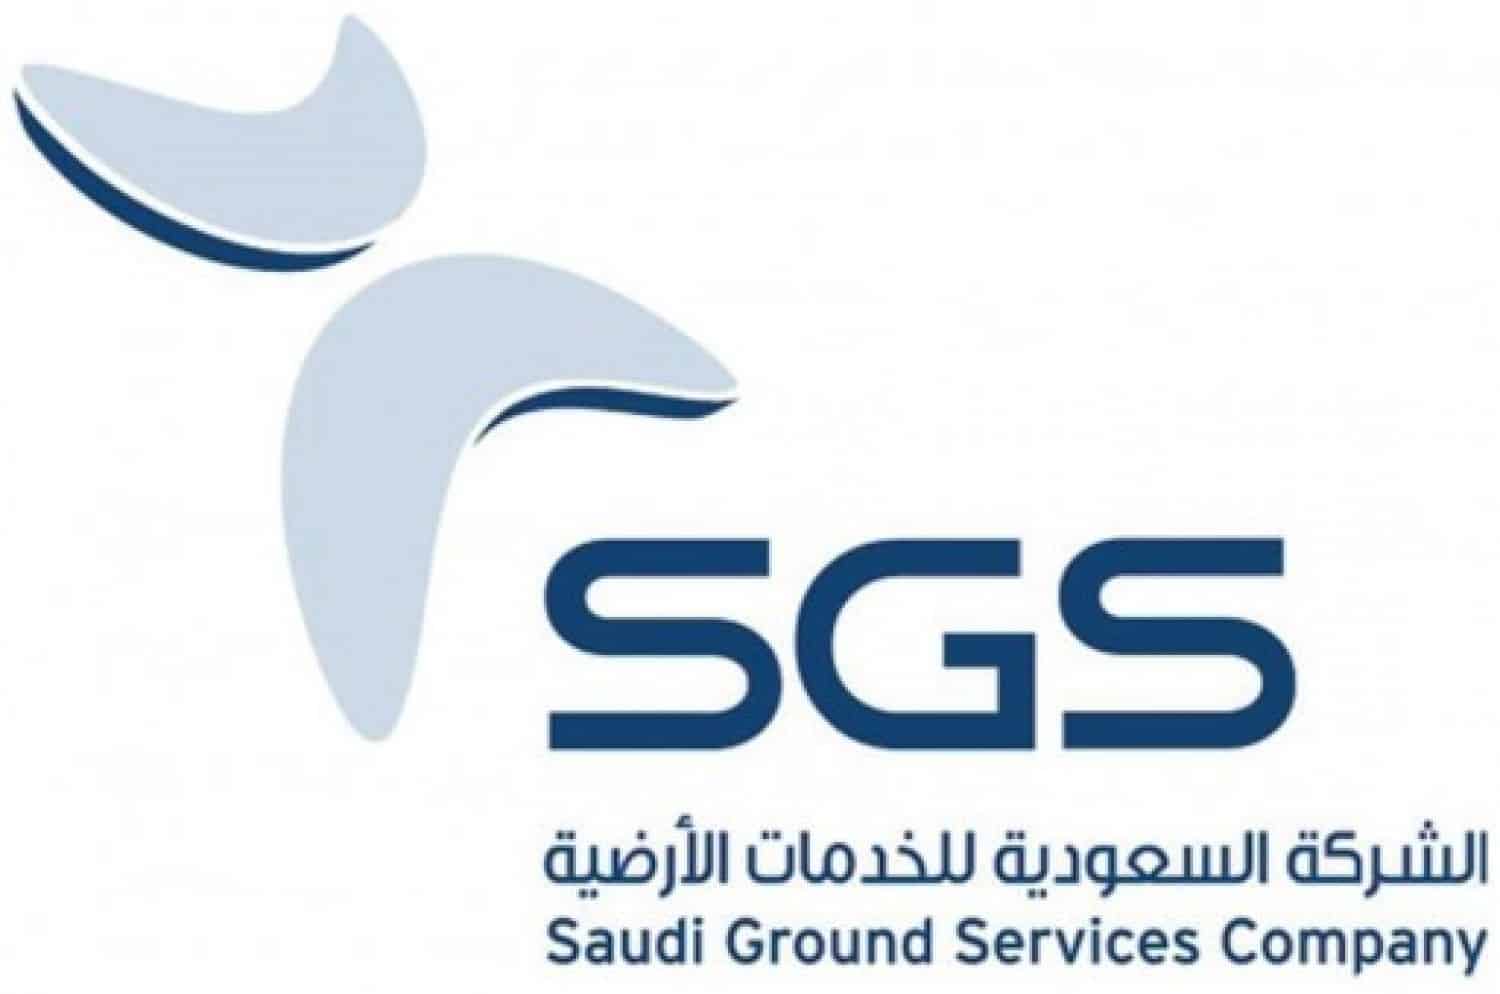 وظائف بالشركة السعودية للخدمات الأرضية